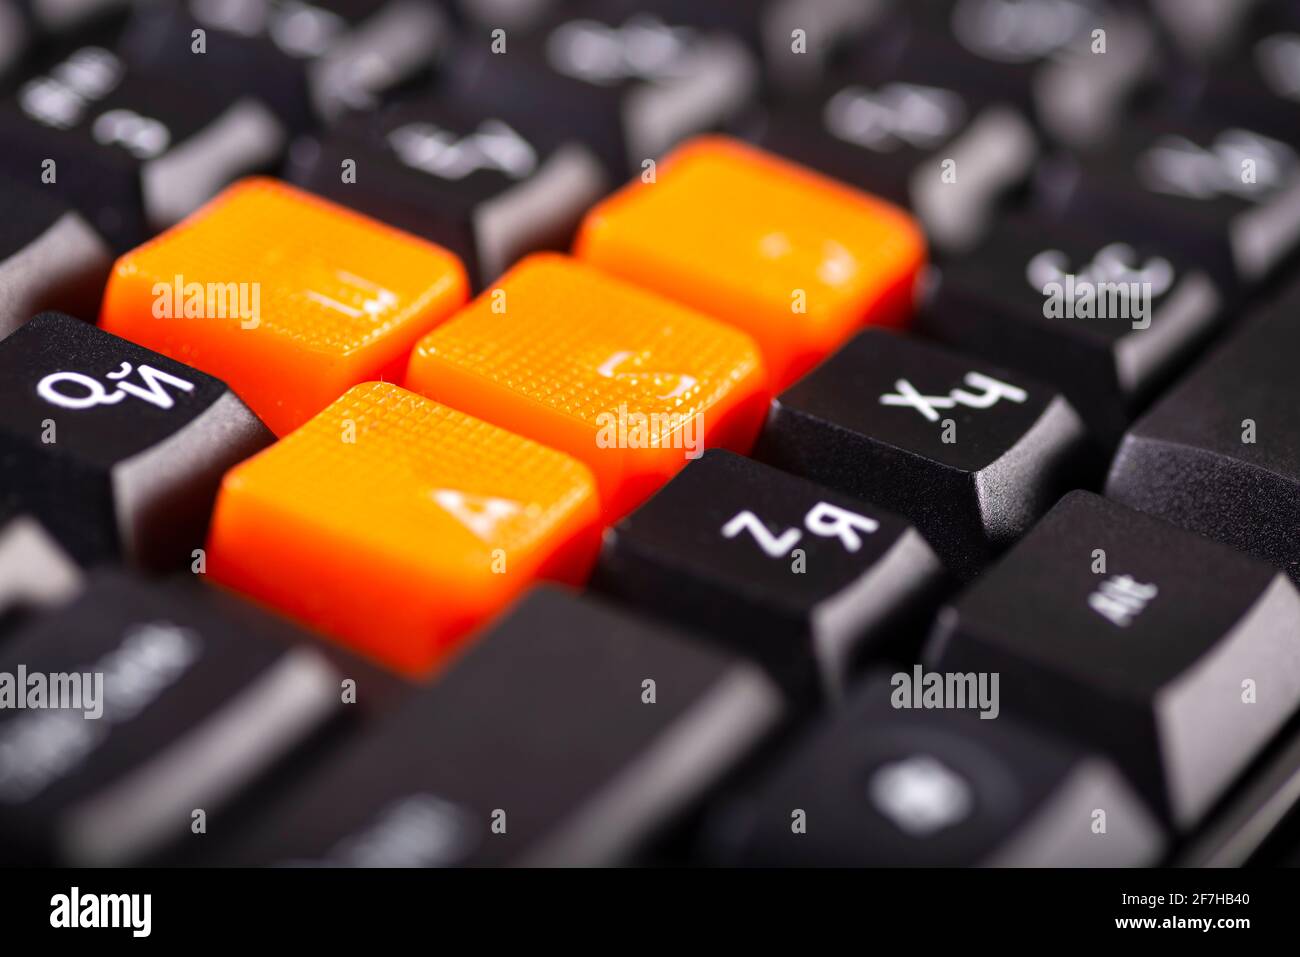 Nahaufnahme der orangefarbenen Pfeiltasten auf einer schwarzen Tastatur,  nach oben, unten, links und rechts auf einer Gaming-Computer-Tastatur  Stockfotografie - Alamy